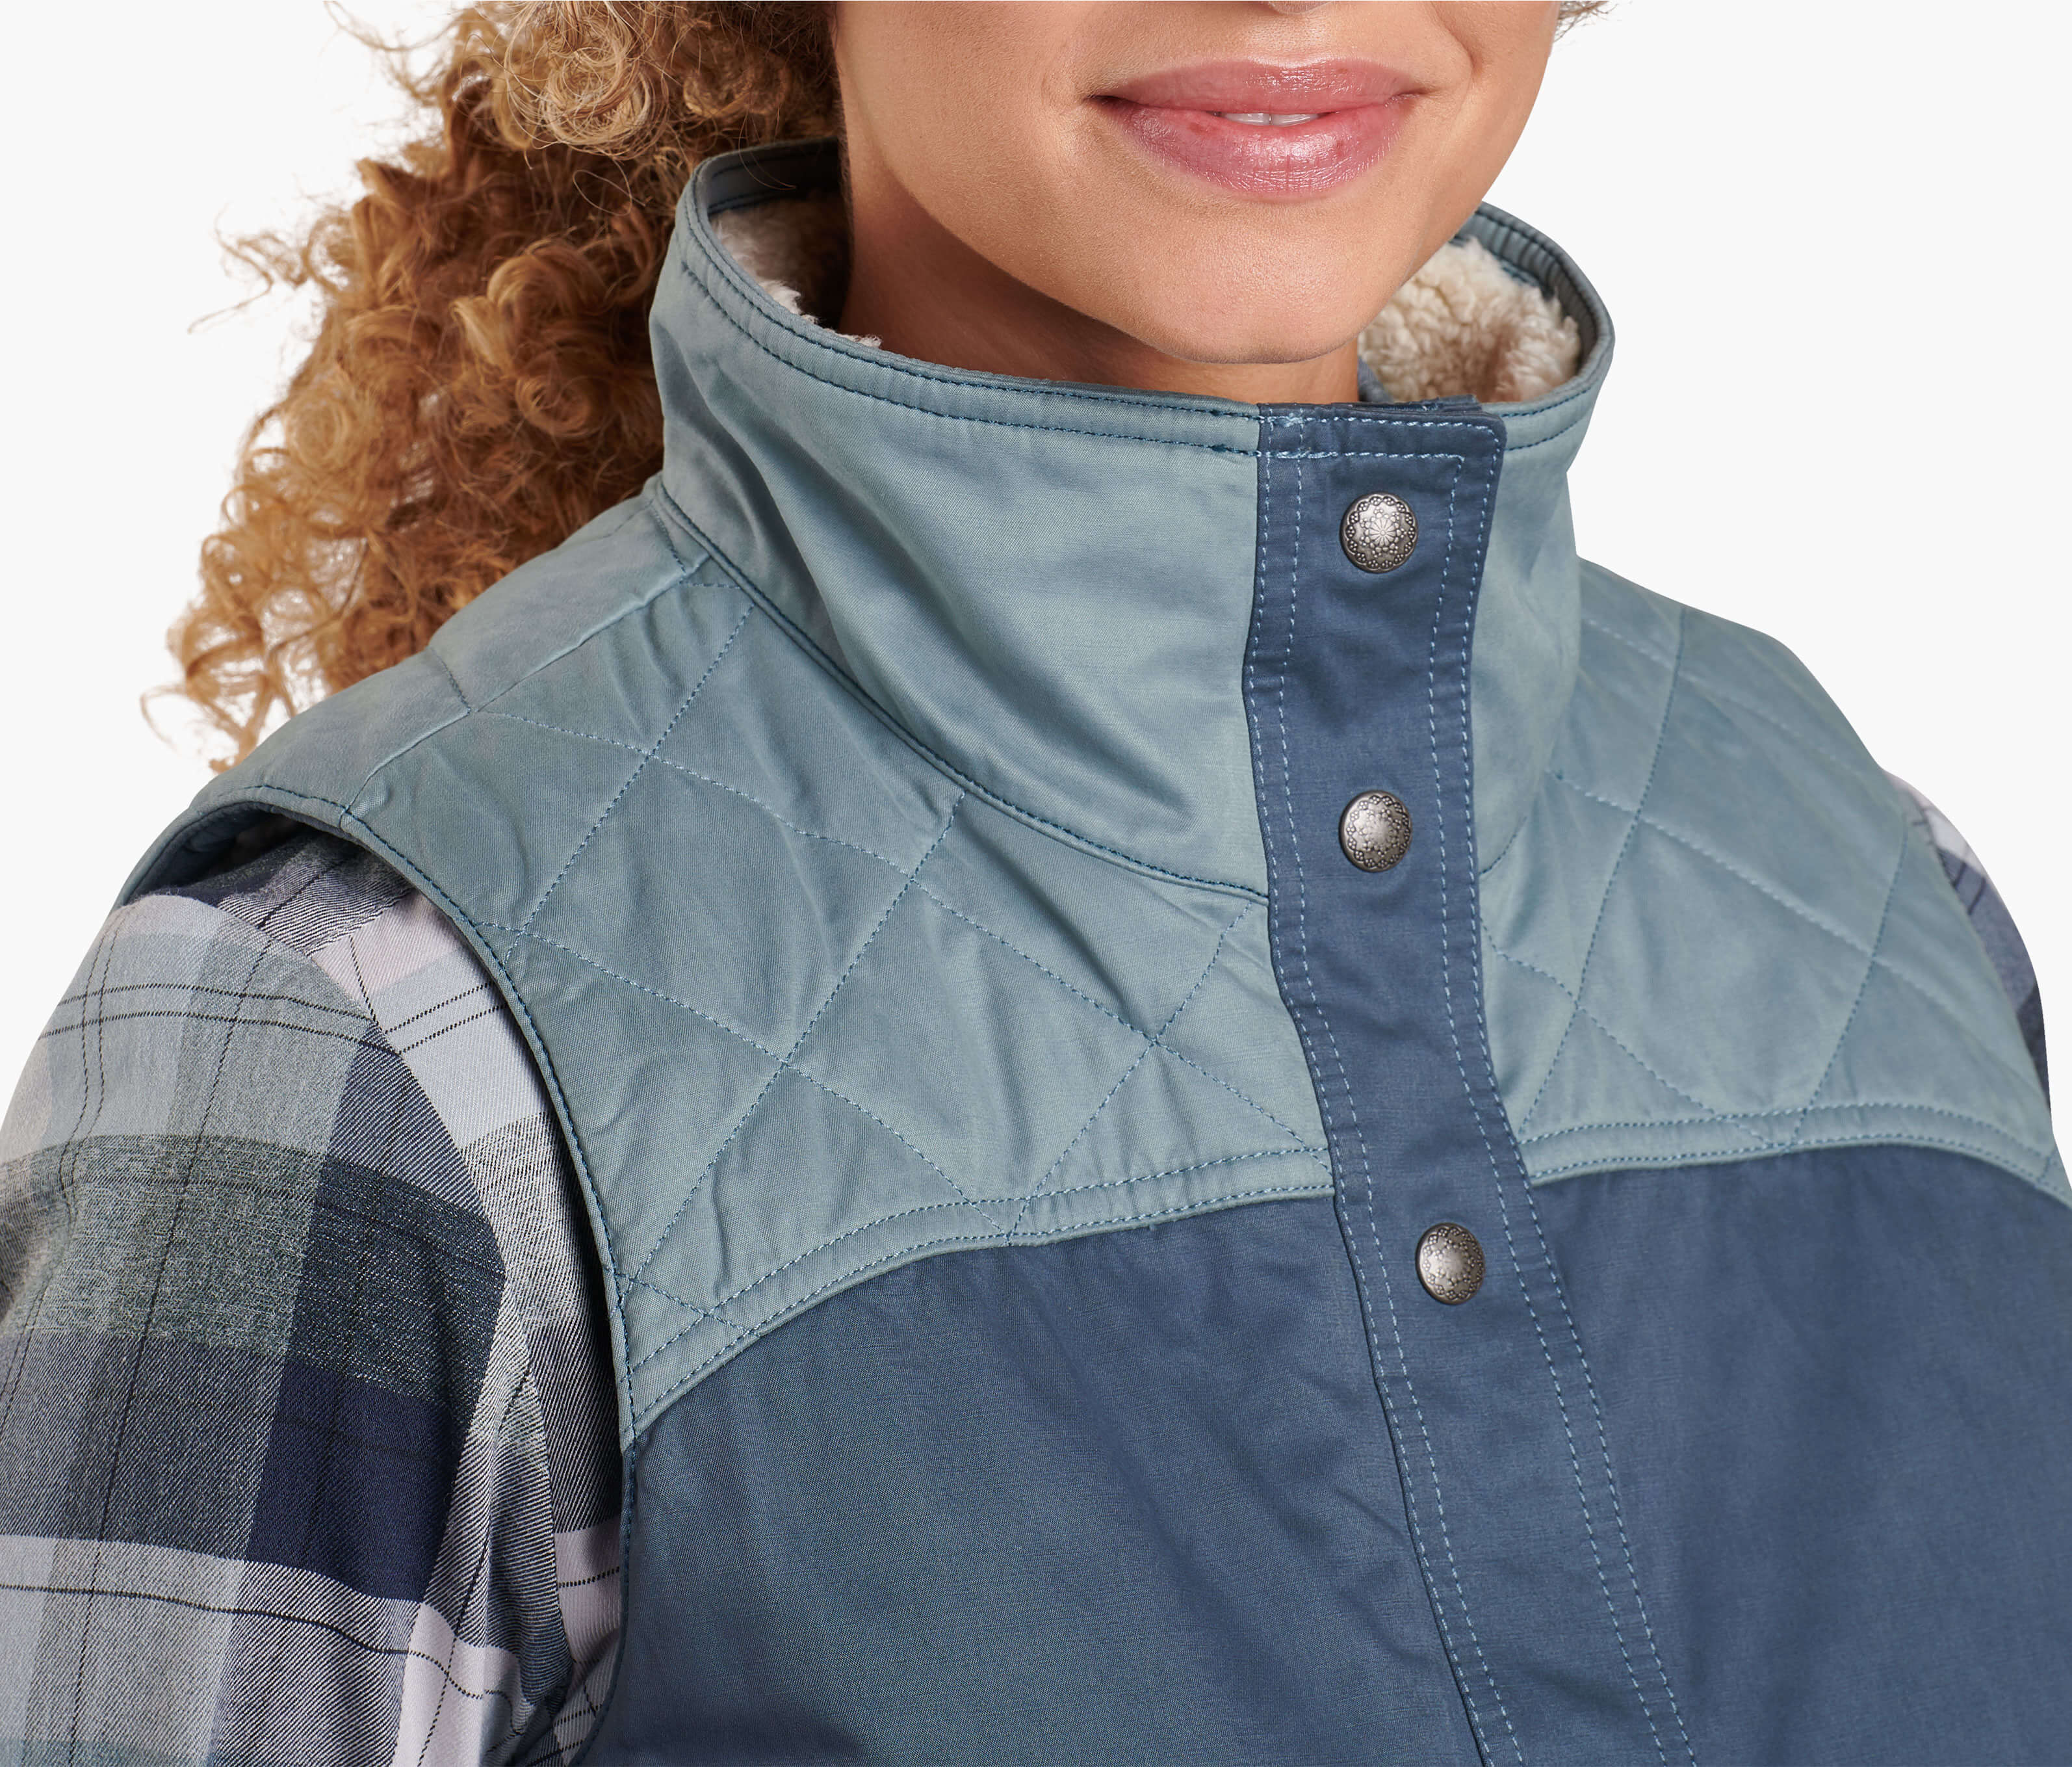 Celeste™ Lined Vest in Women's Outerwear